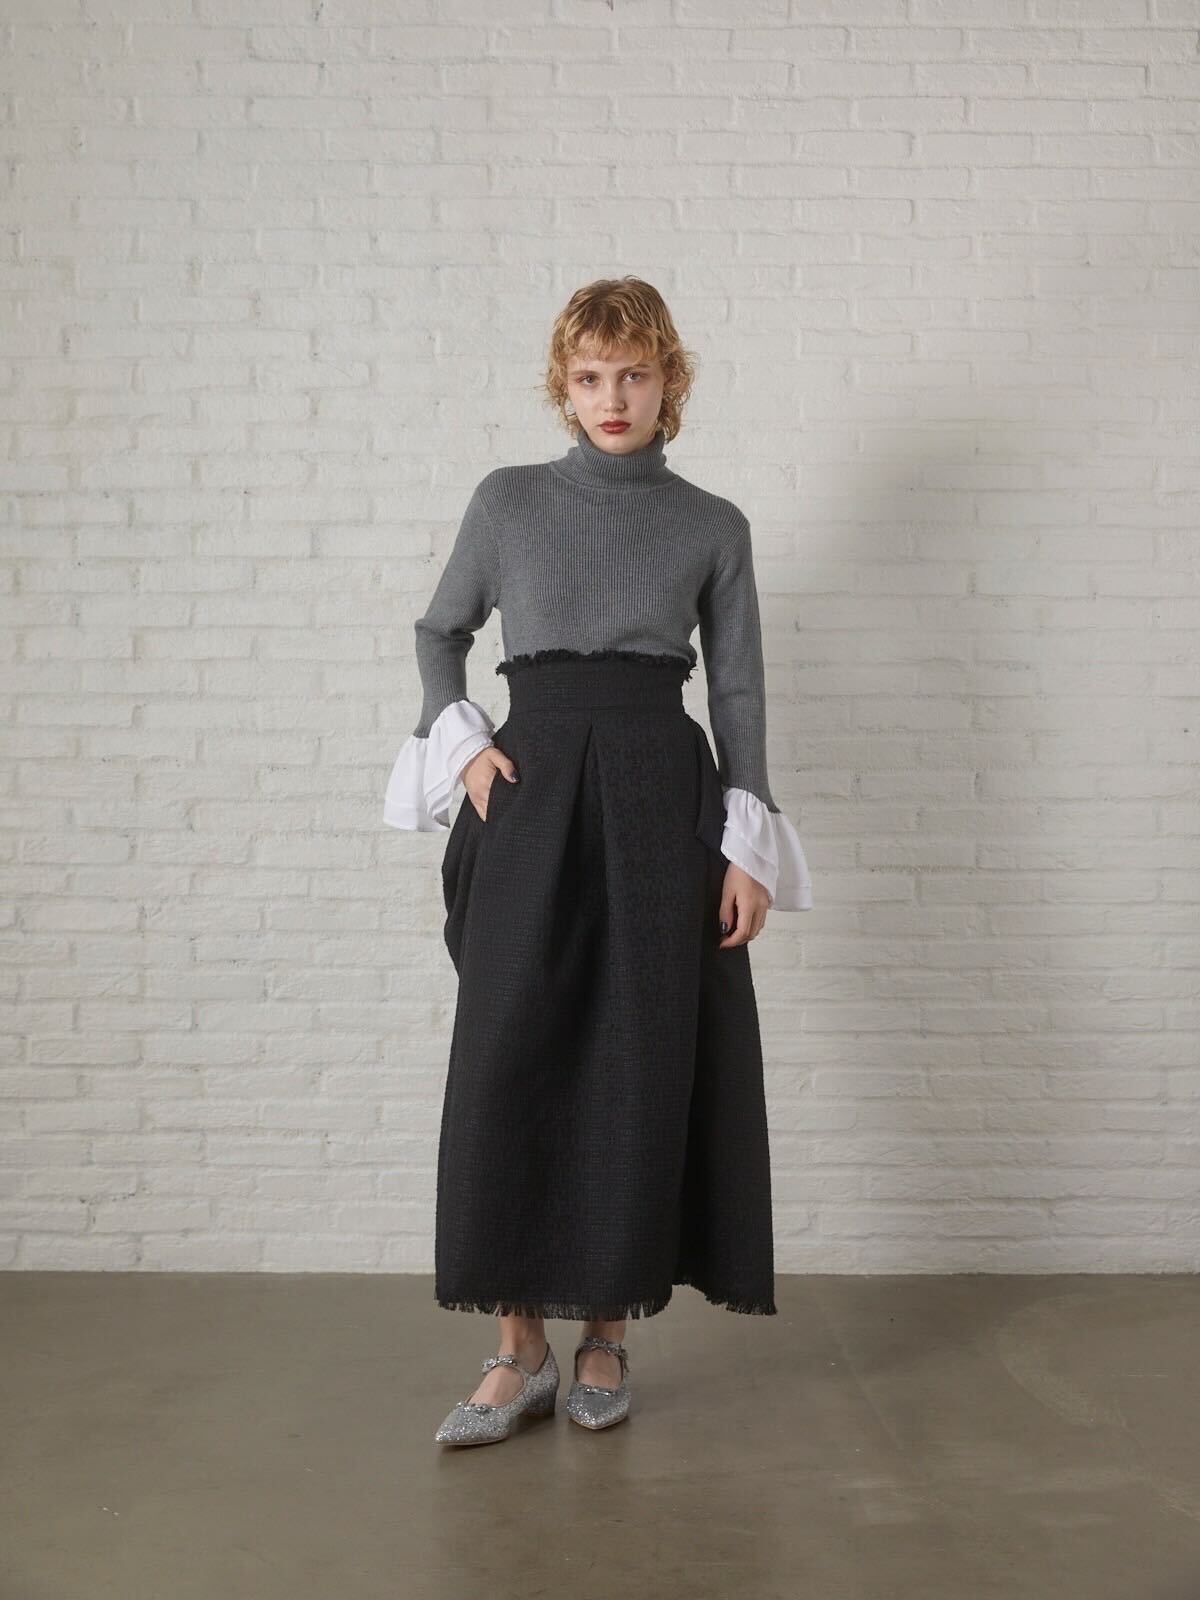 tweed silhouette skirt